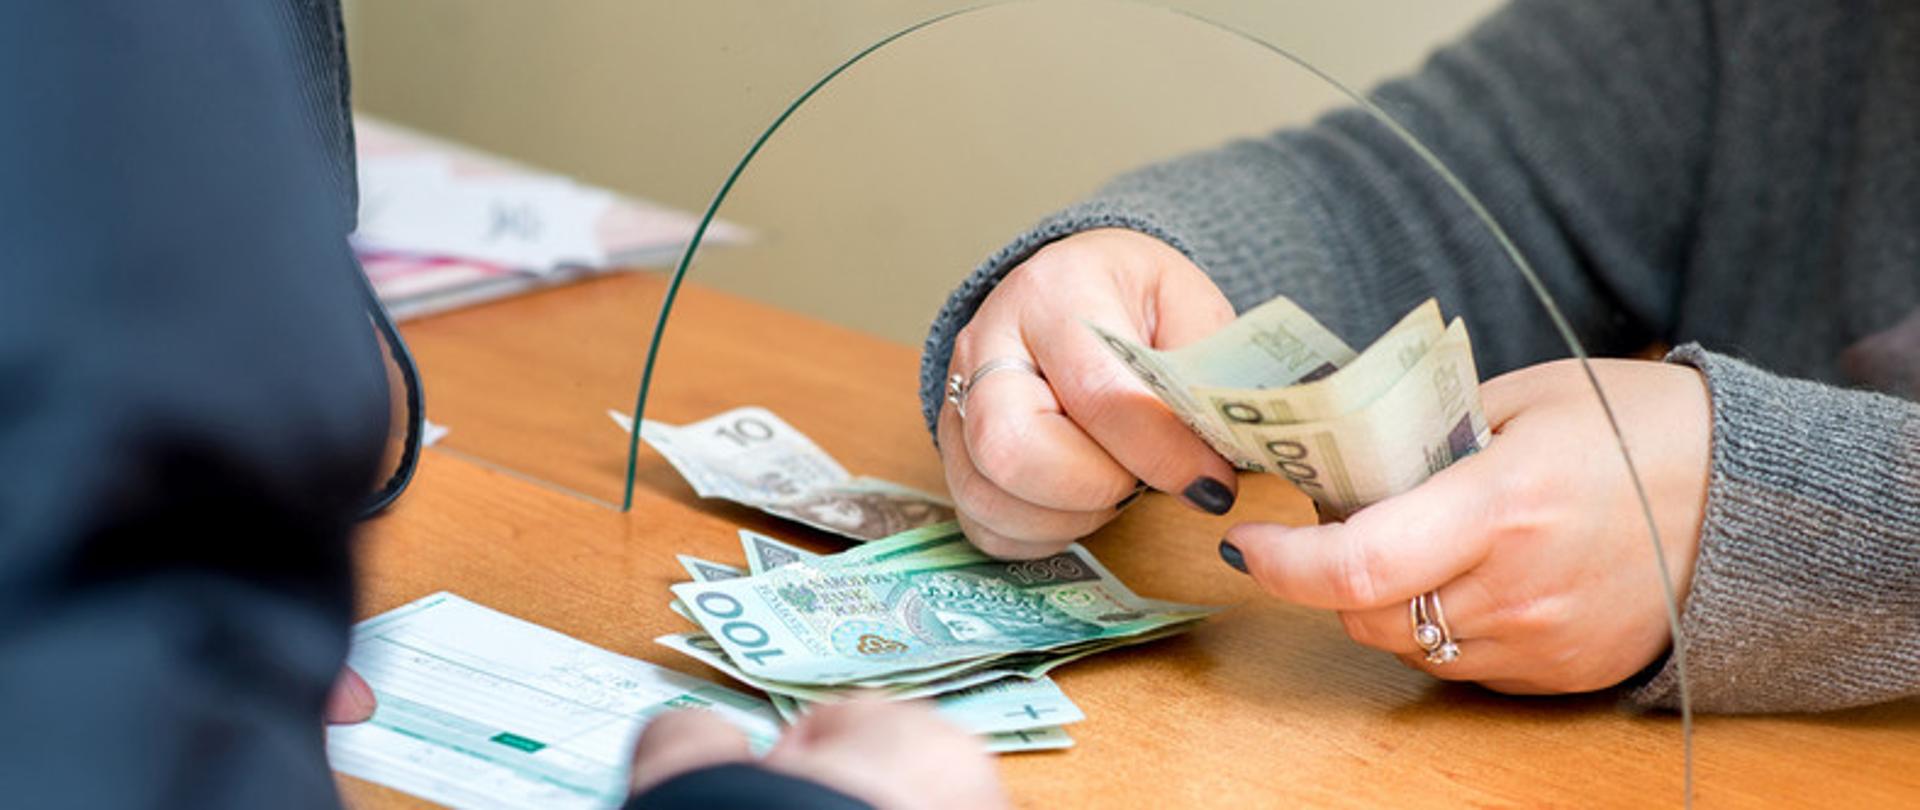 zdjęcie przedstawia dłonie kobiety liczące pieniądze 